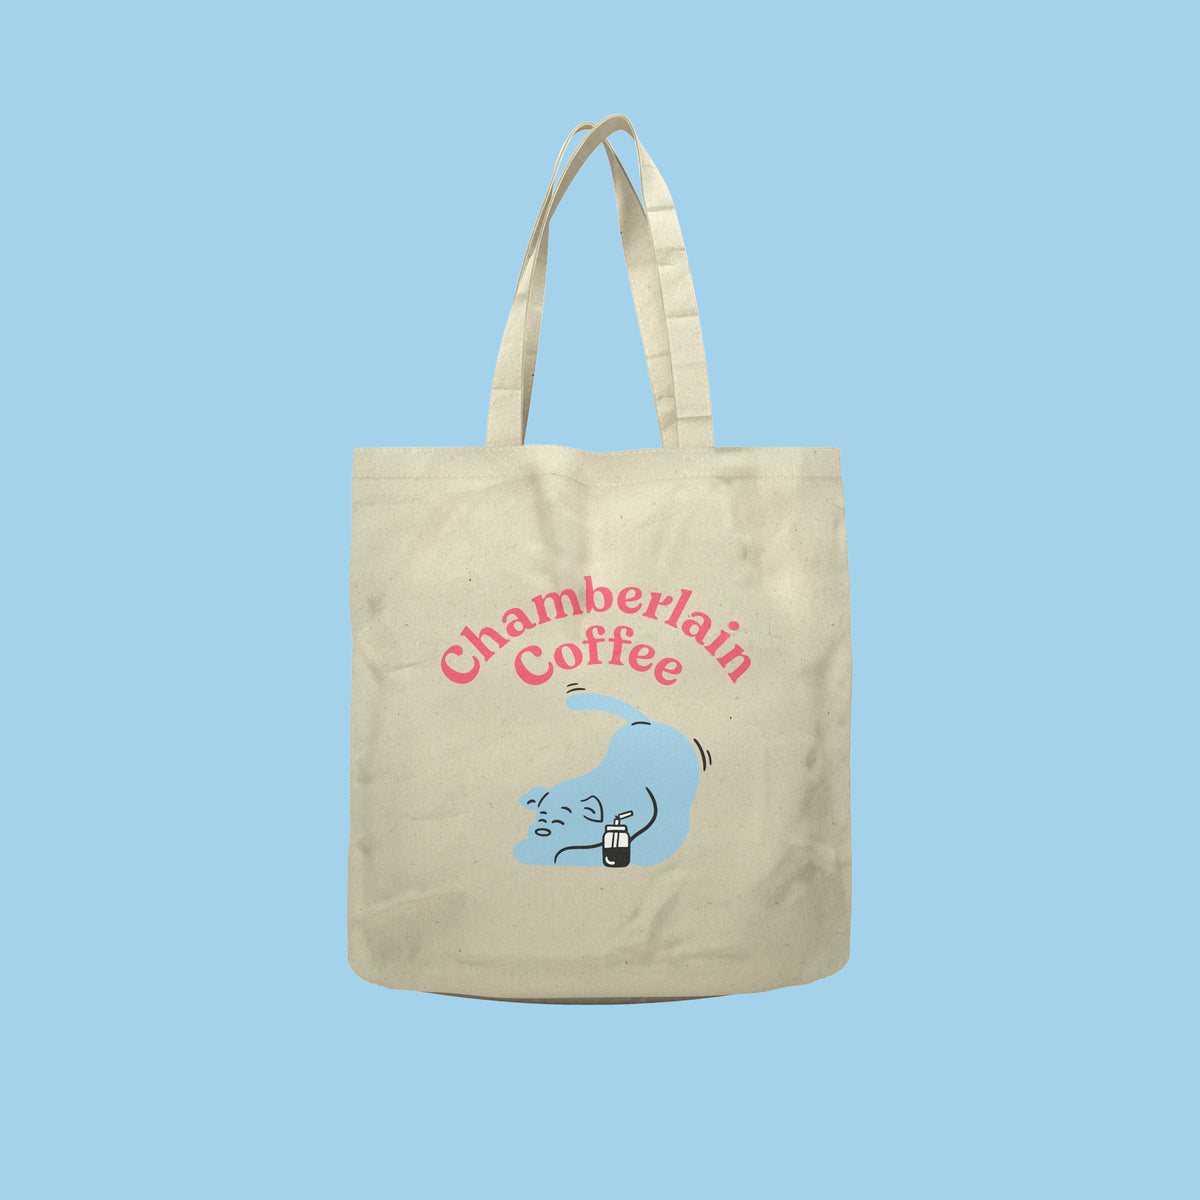 chamberlain coffee social dog tote bag